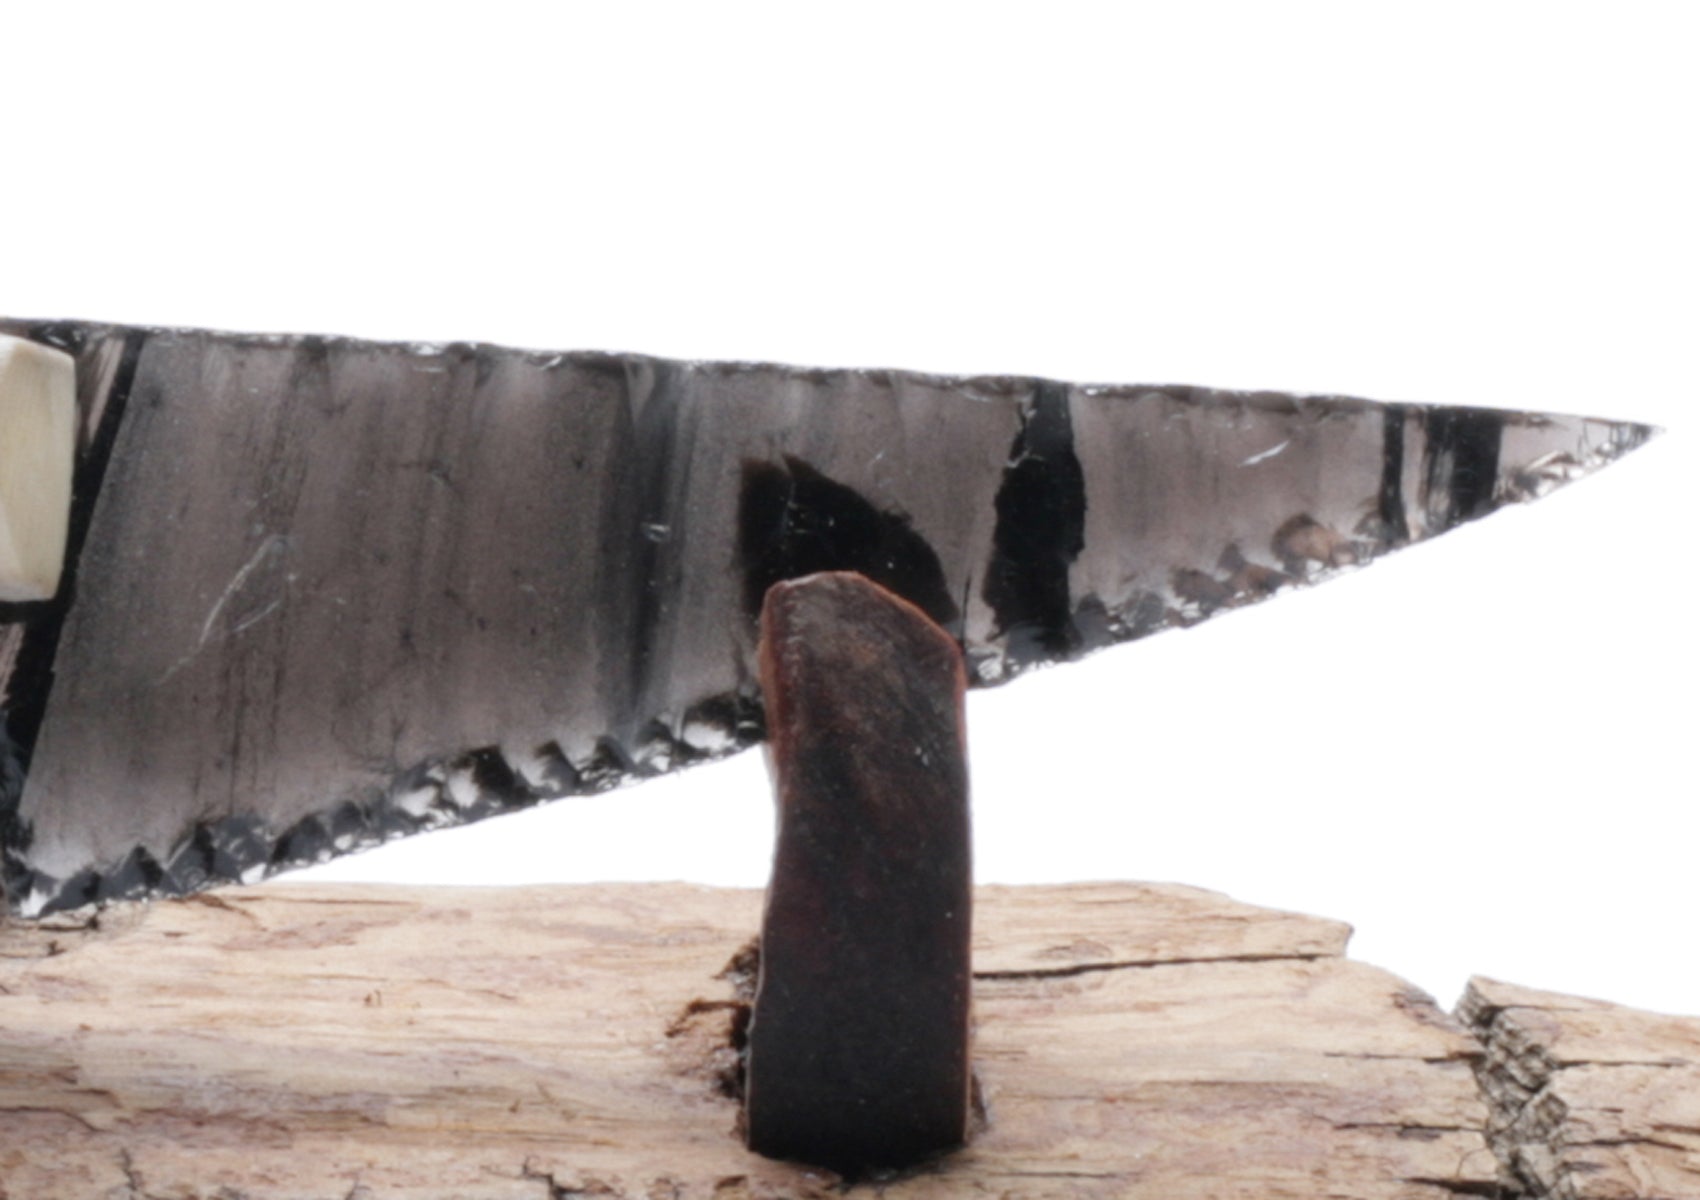 Black Hatched Translucent Obsidian Stone Knife with Roe Deer Antler